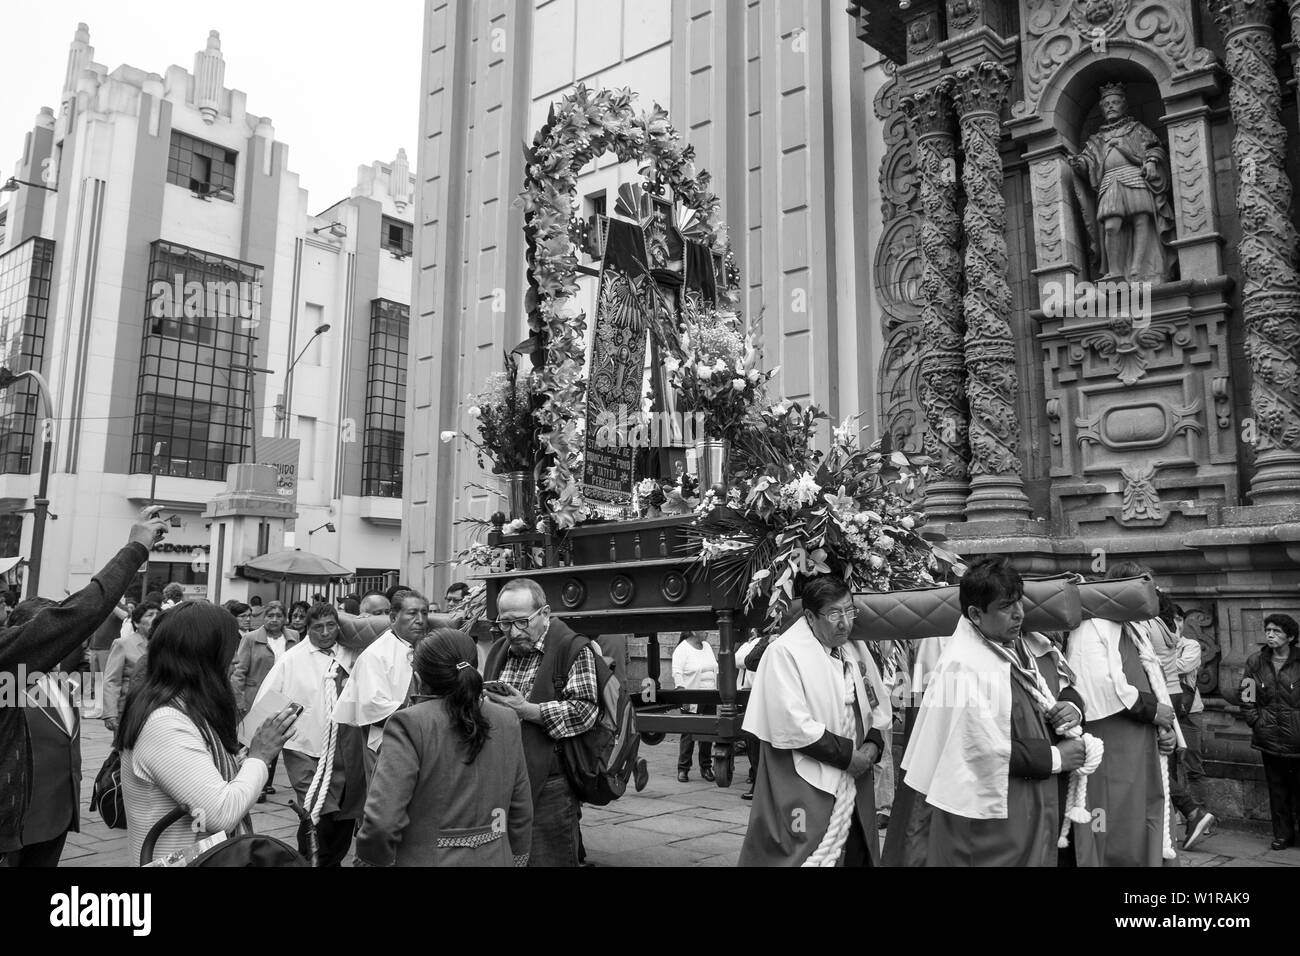 Perù, Lima, Iglesia de la Merced Stock Photo